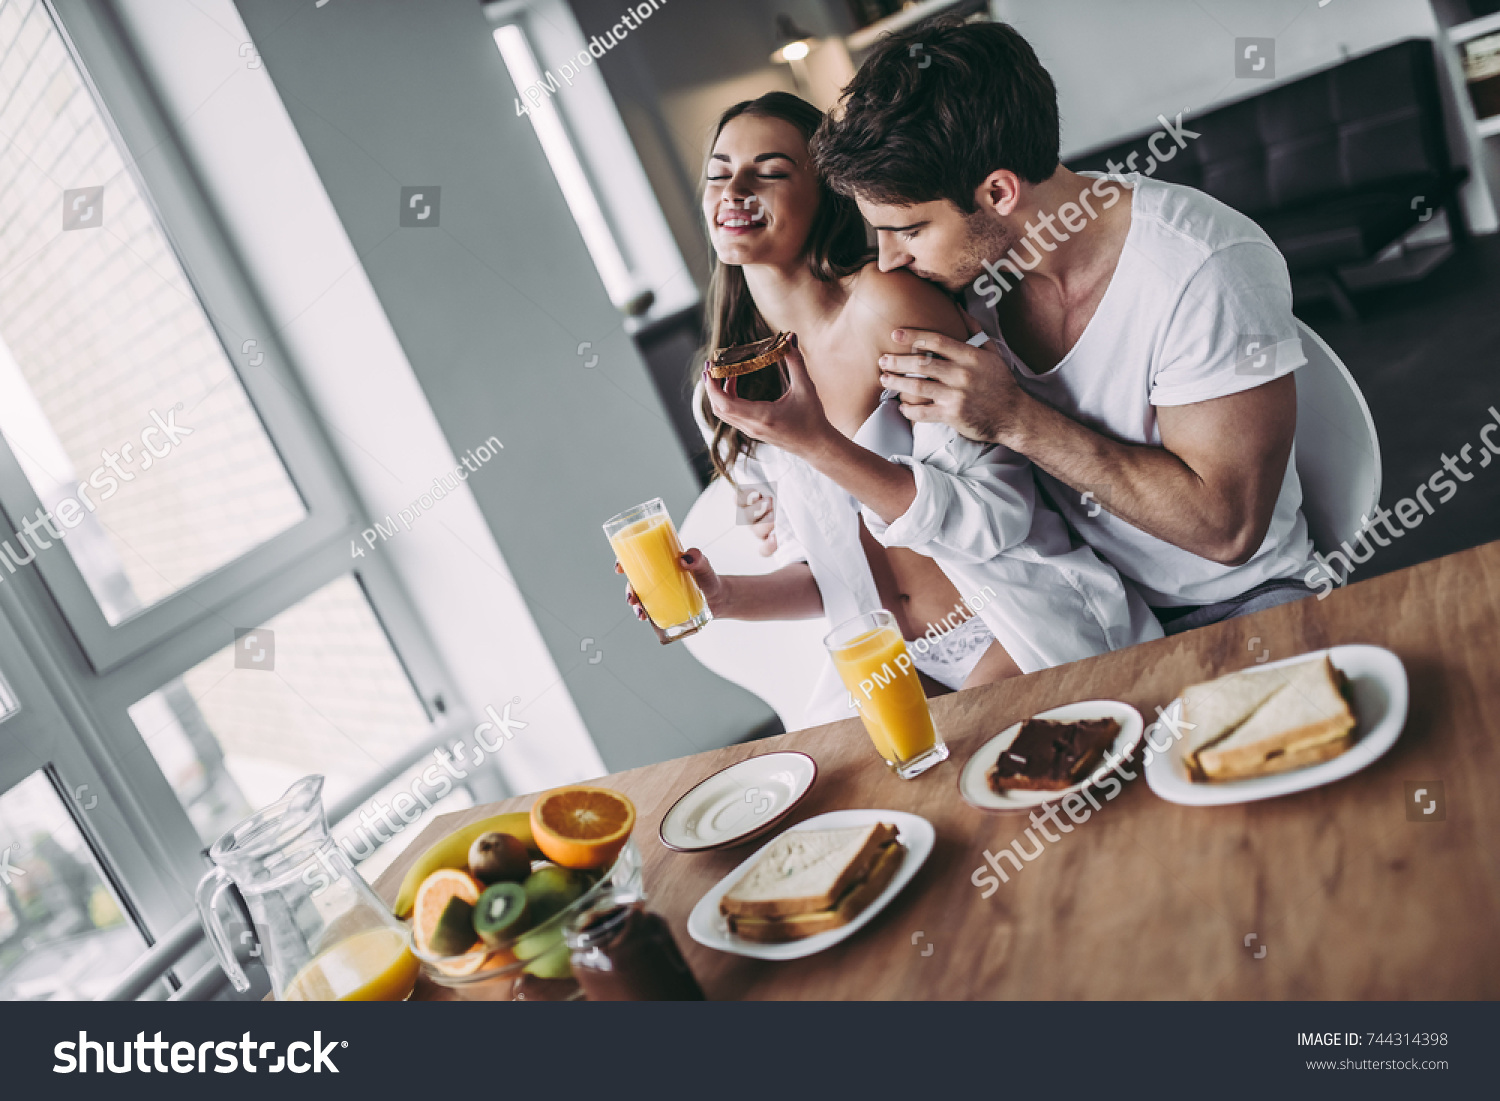 порно принес ей завтрак фото 94